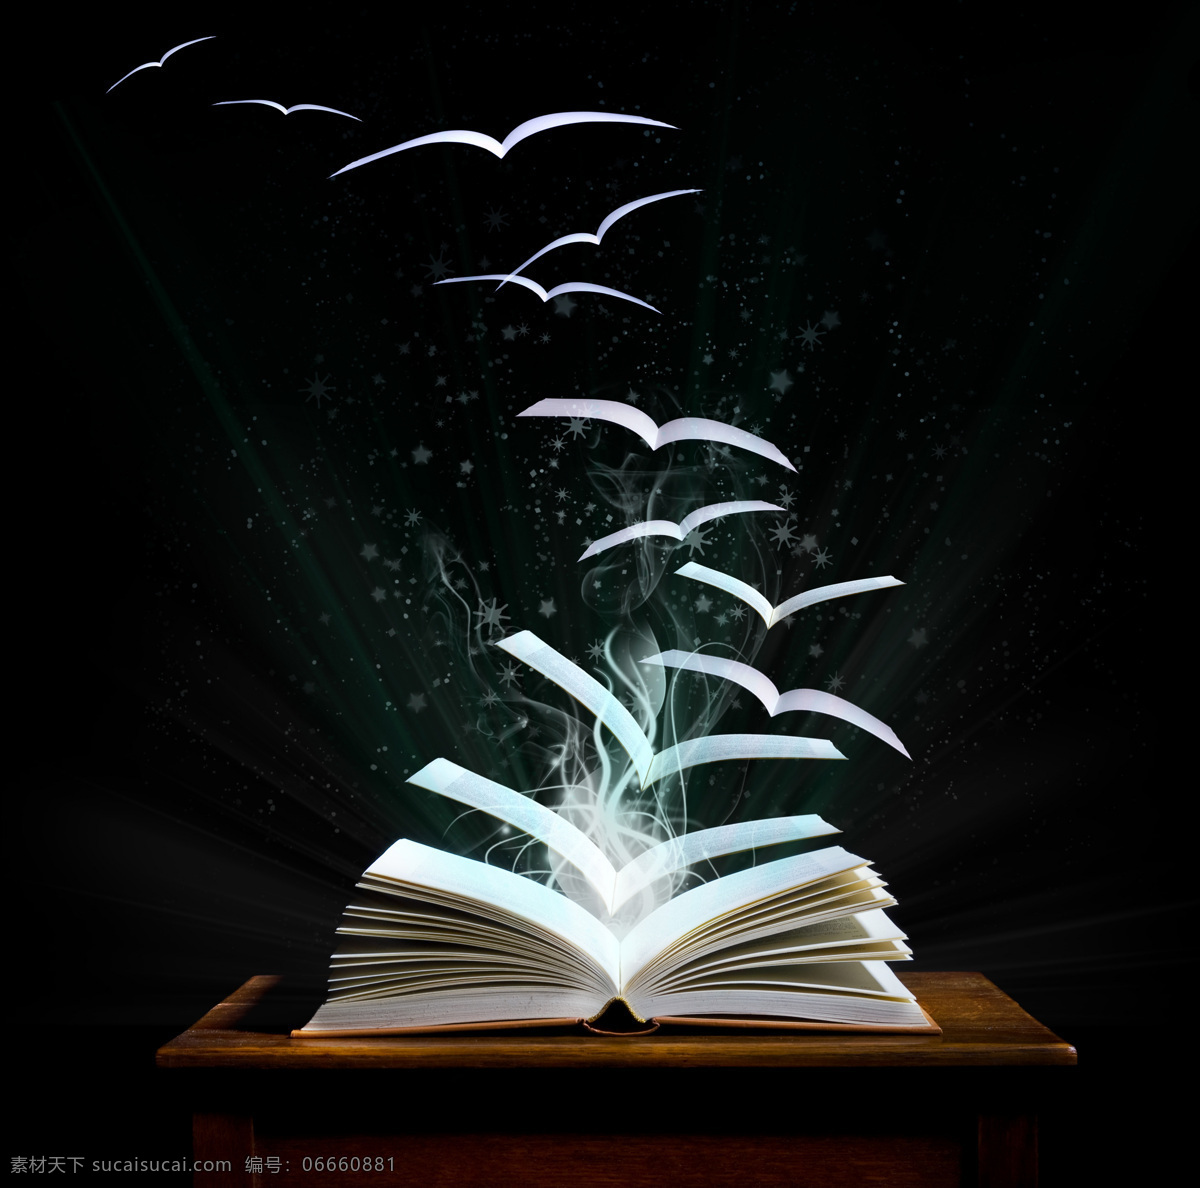 飞翔 书本 发光的书本 飞翔的书本 创意书本 光芒 知识 学习 书本图片 生活百科